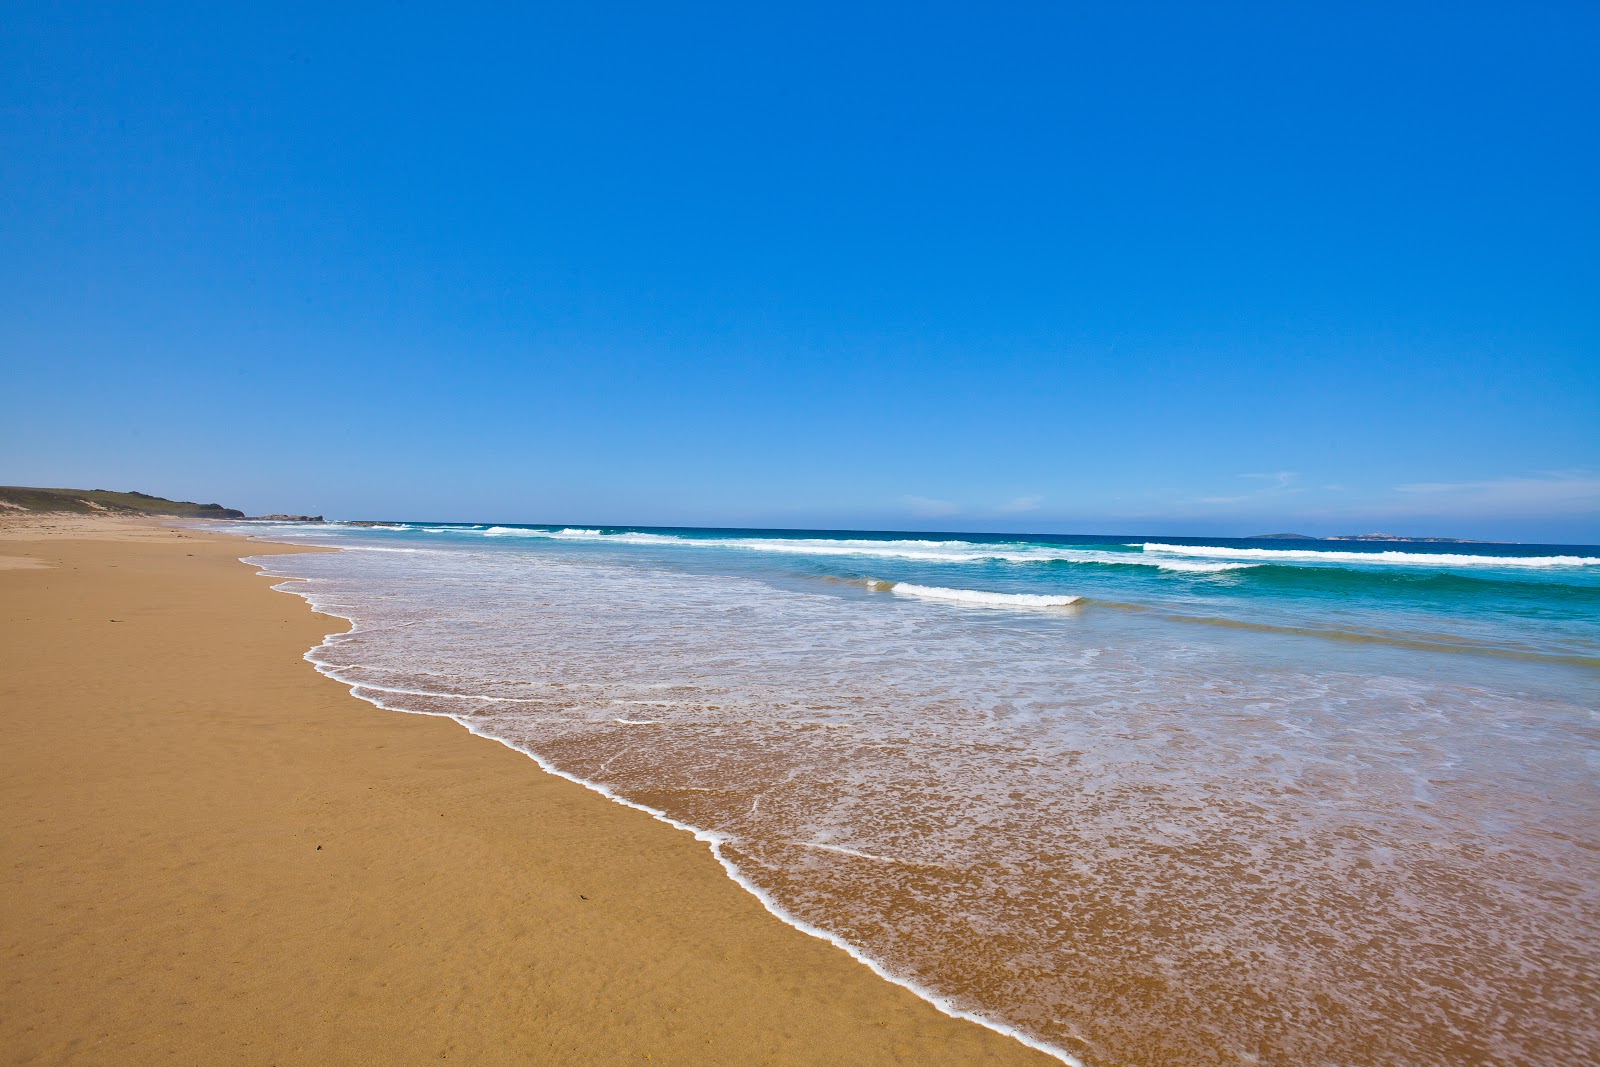 Foto de Handkerchief Beach com areia brilhante superfície